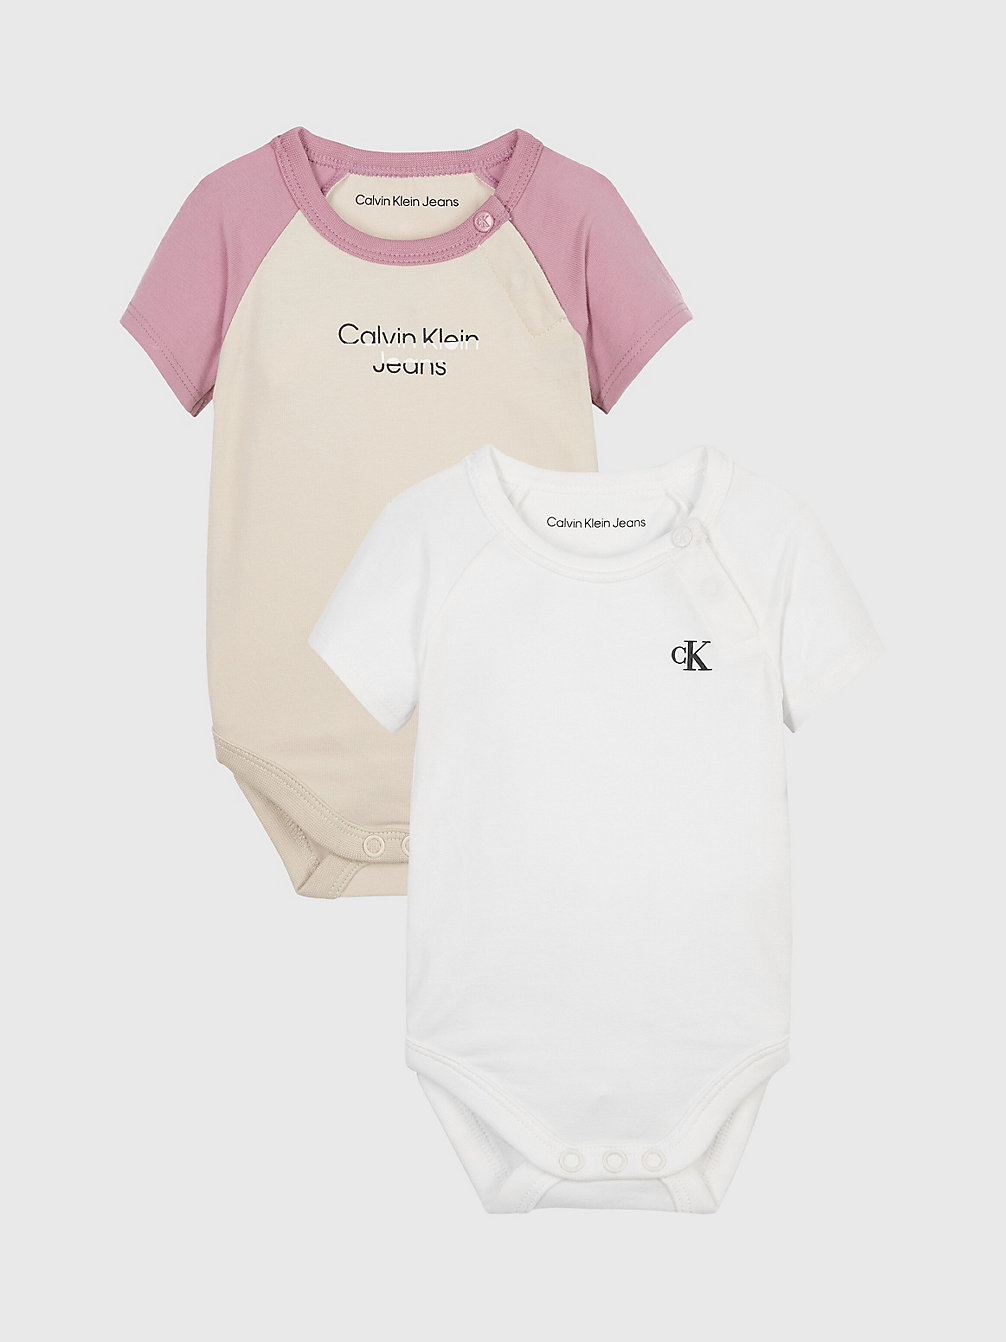 BRIGHT WHITE / CLASSIC BEIGE 2-Pack Newborn-Bodysuit Set undefined newborn Calvin Klein